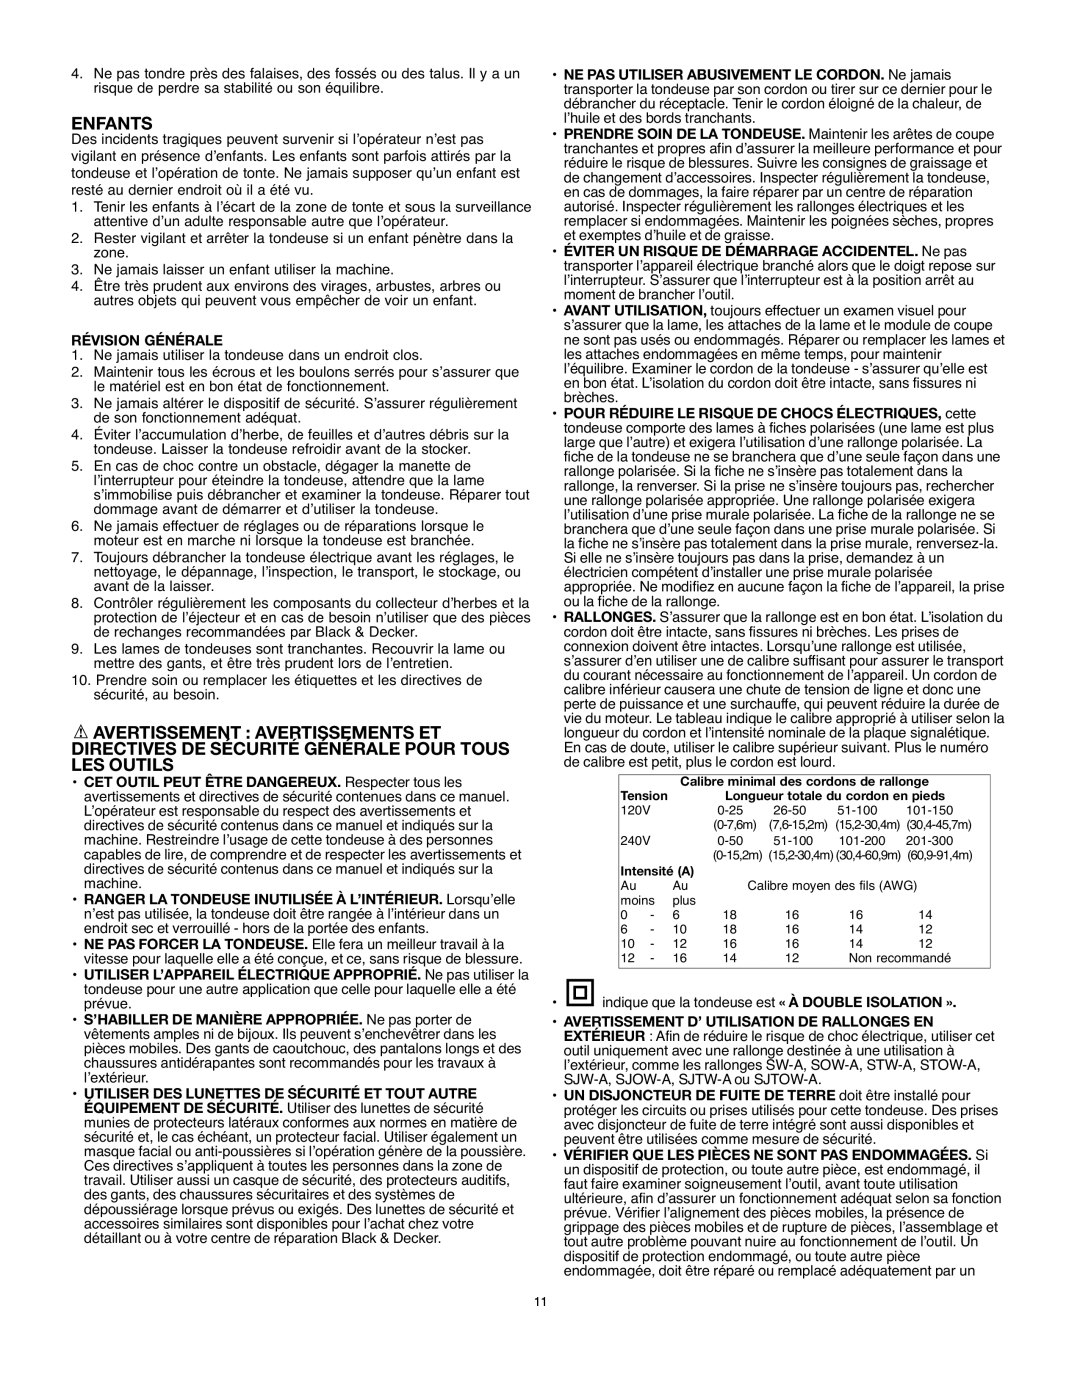 Black & Decker MM675 instruction manual Enfants, Révision Générale 